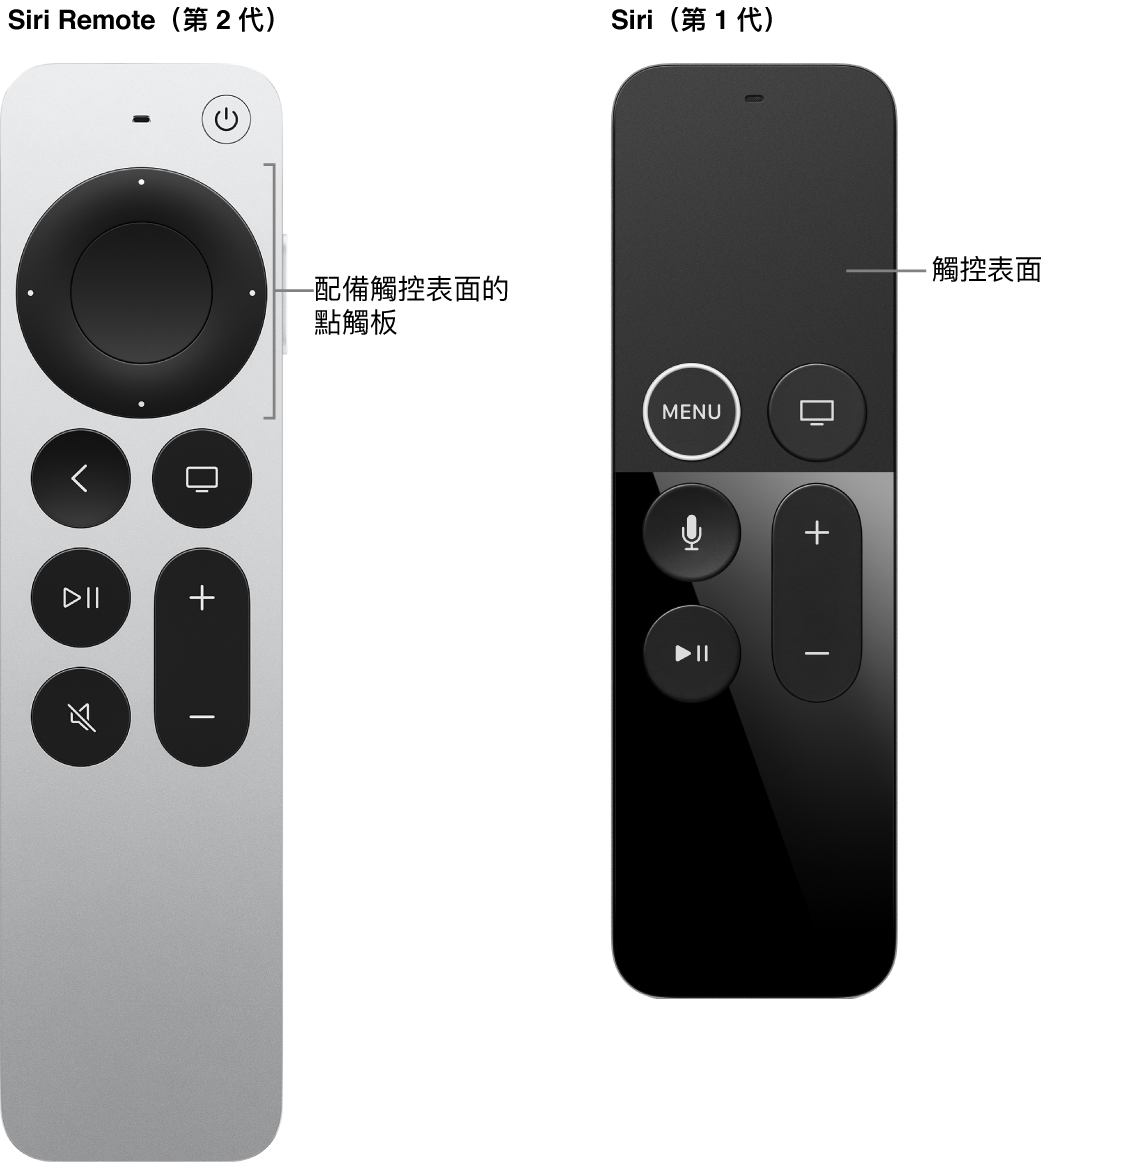 配備點觸板的 Siri Remote（第 2 代）以及配備觸控表面的 Siri Remote（第 1 代）